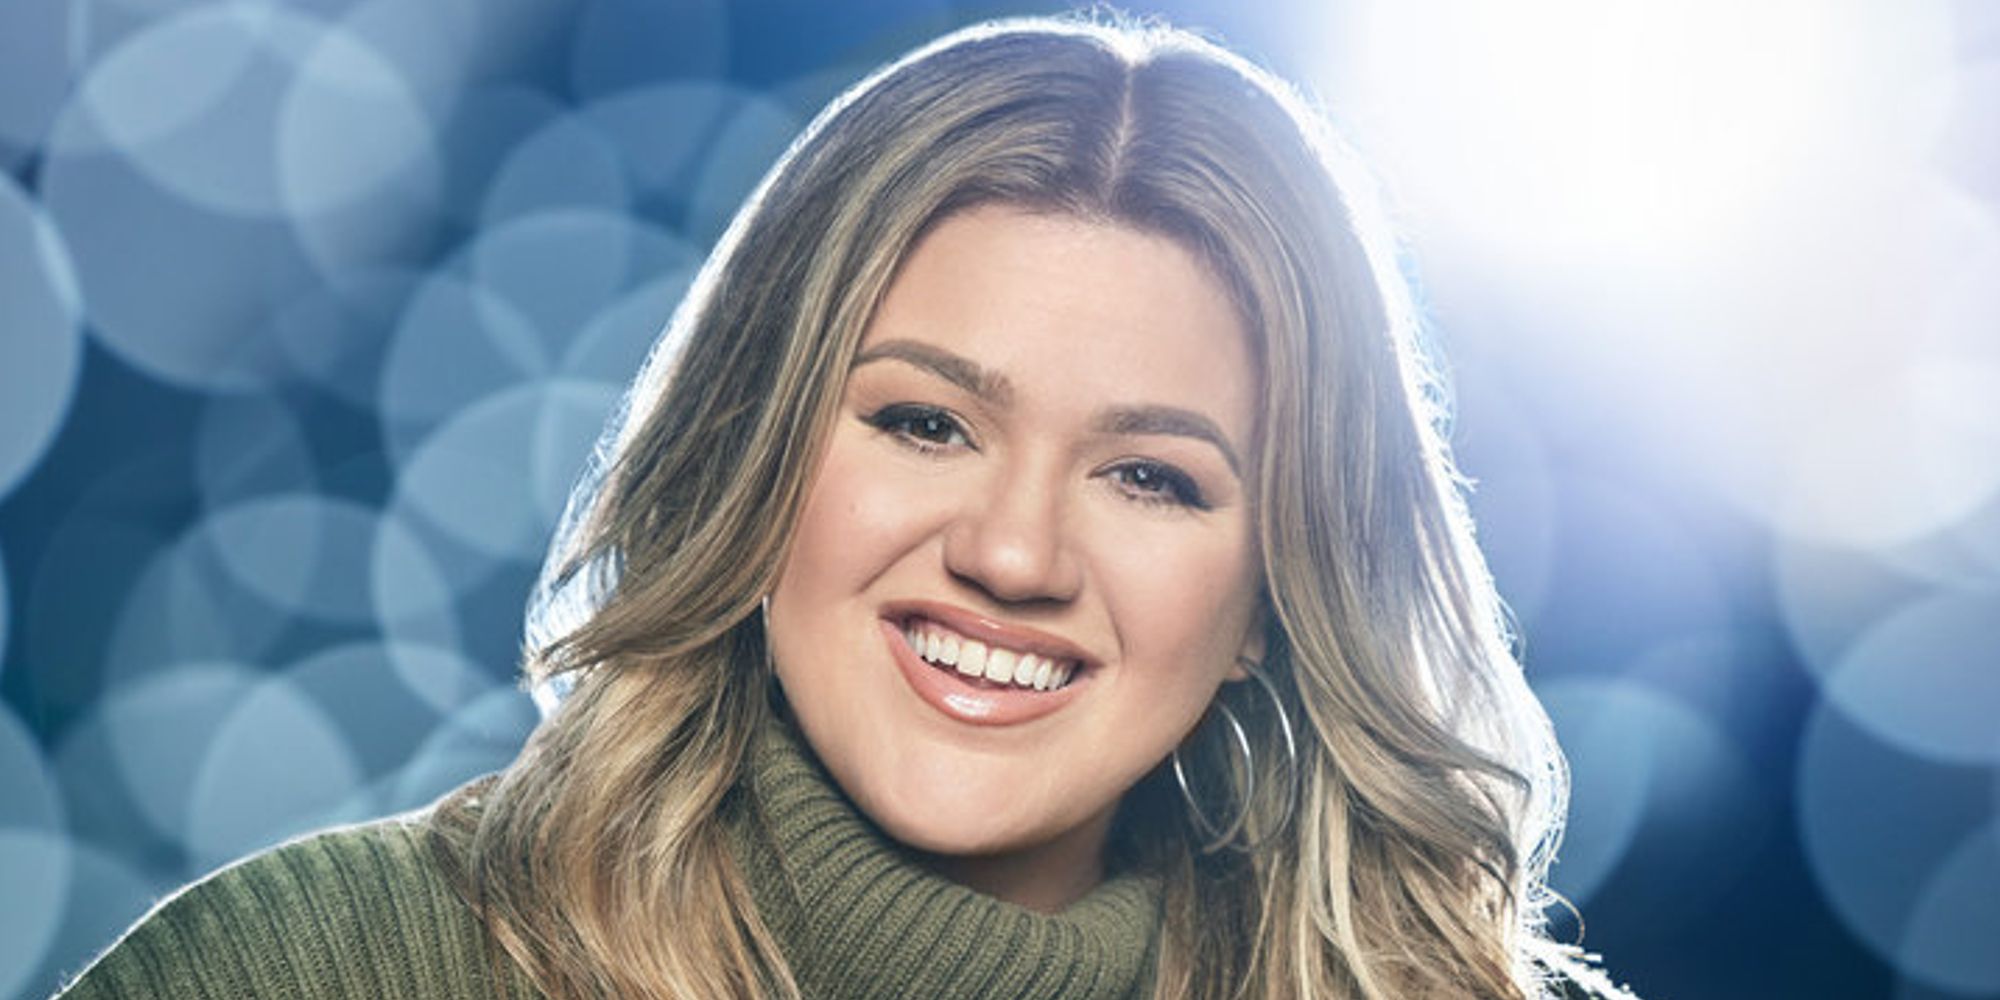 Kelly Clarkson on The Voice season 21